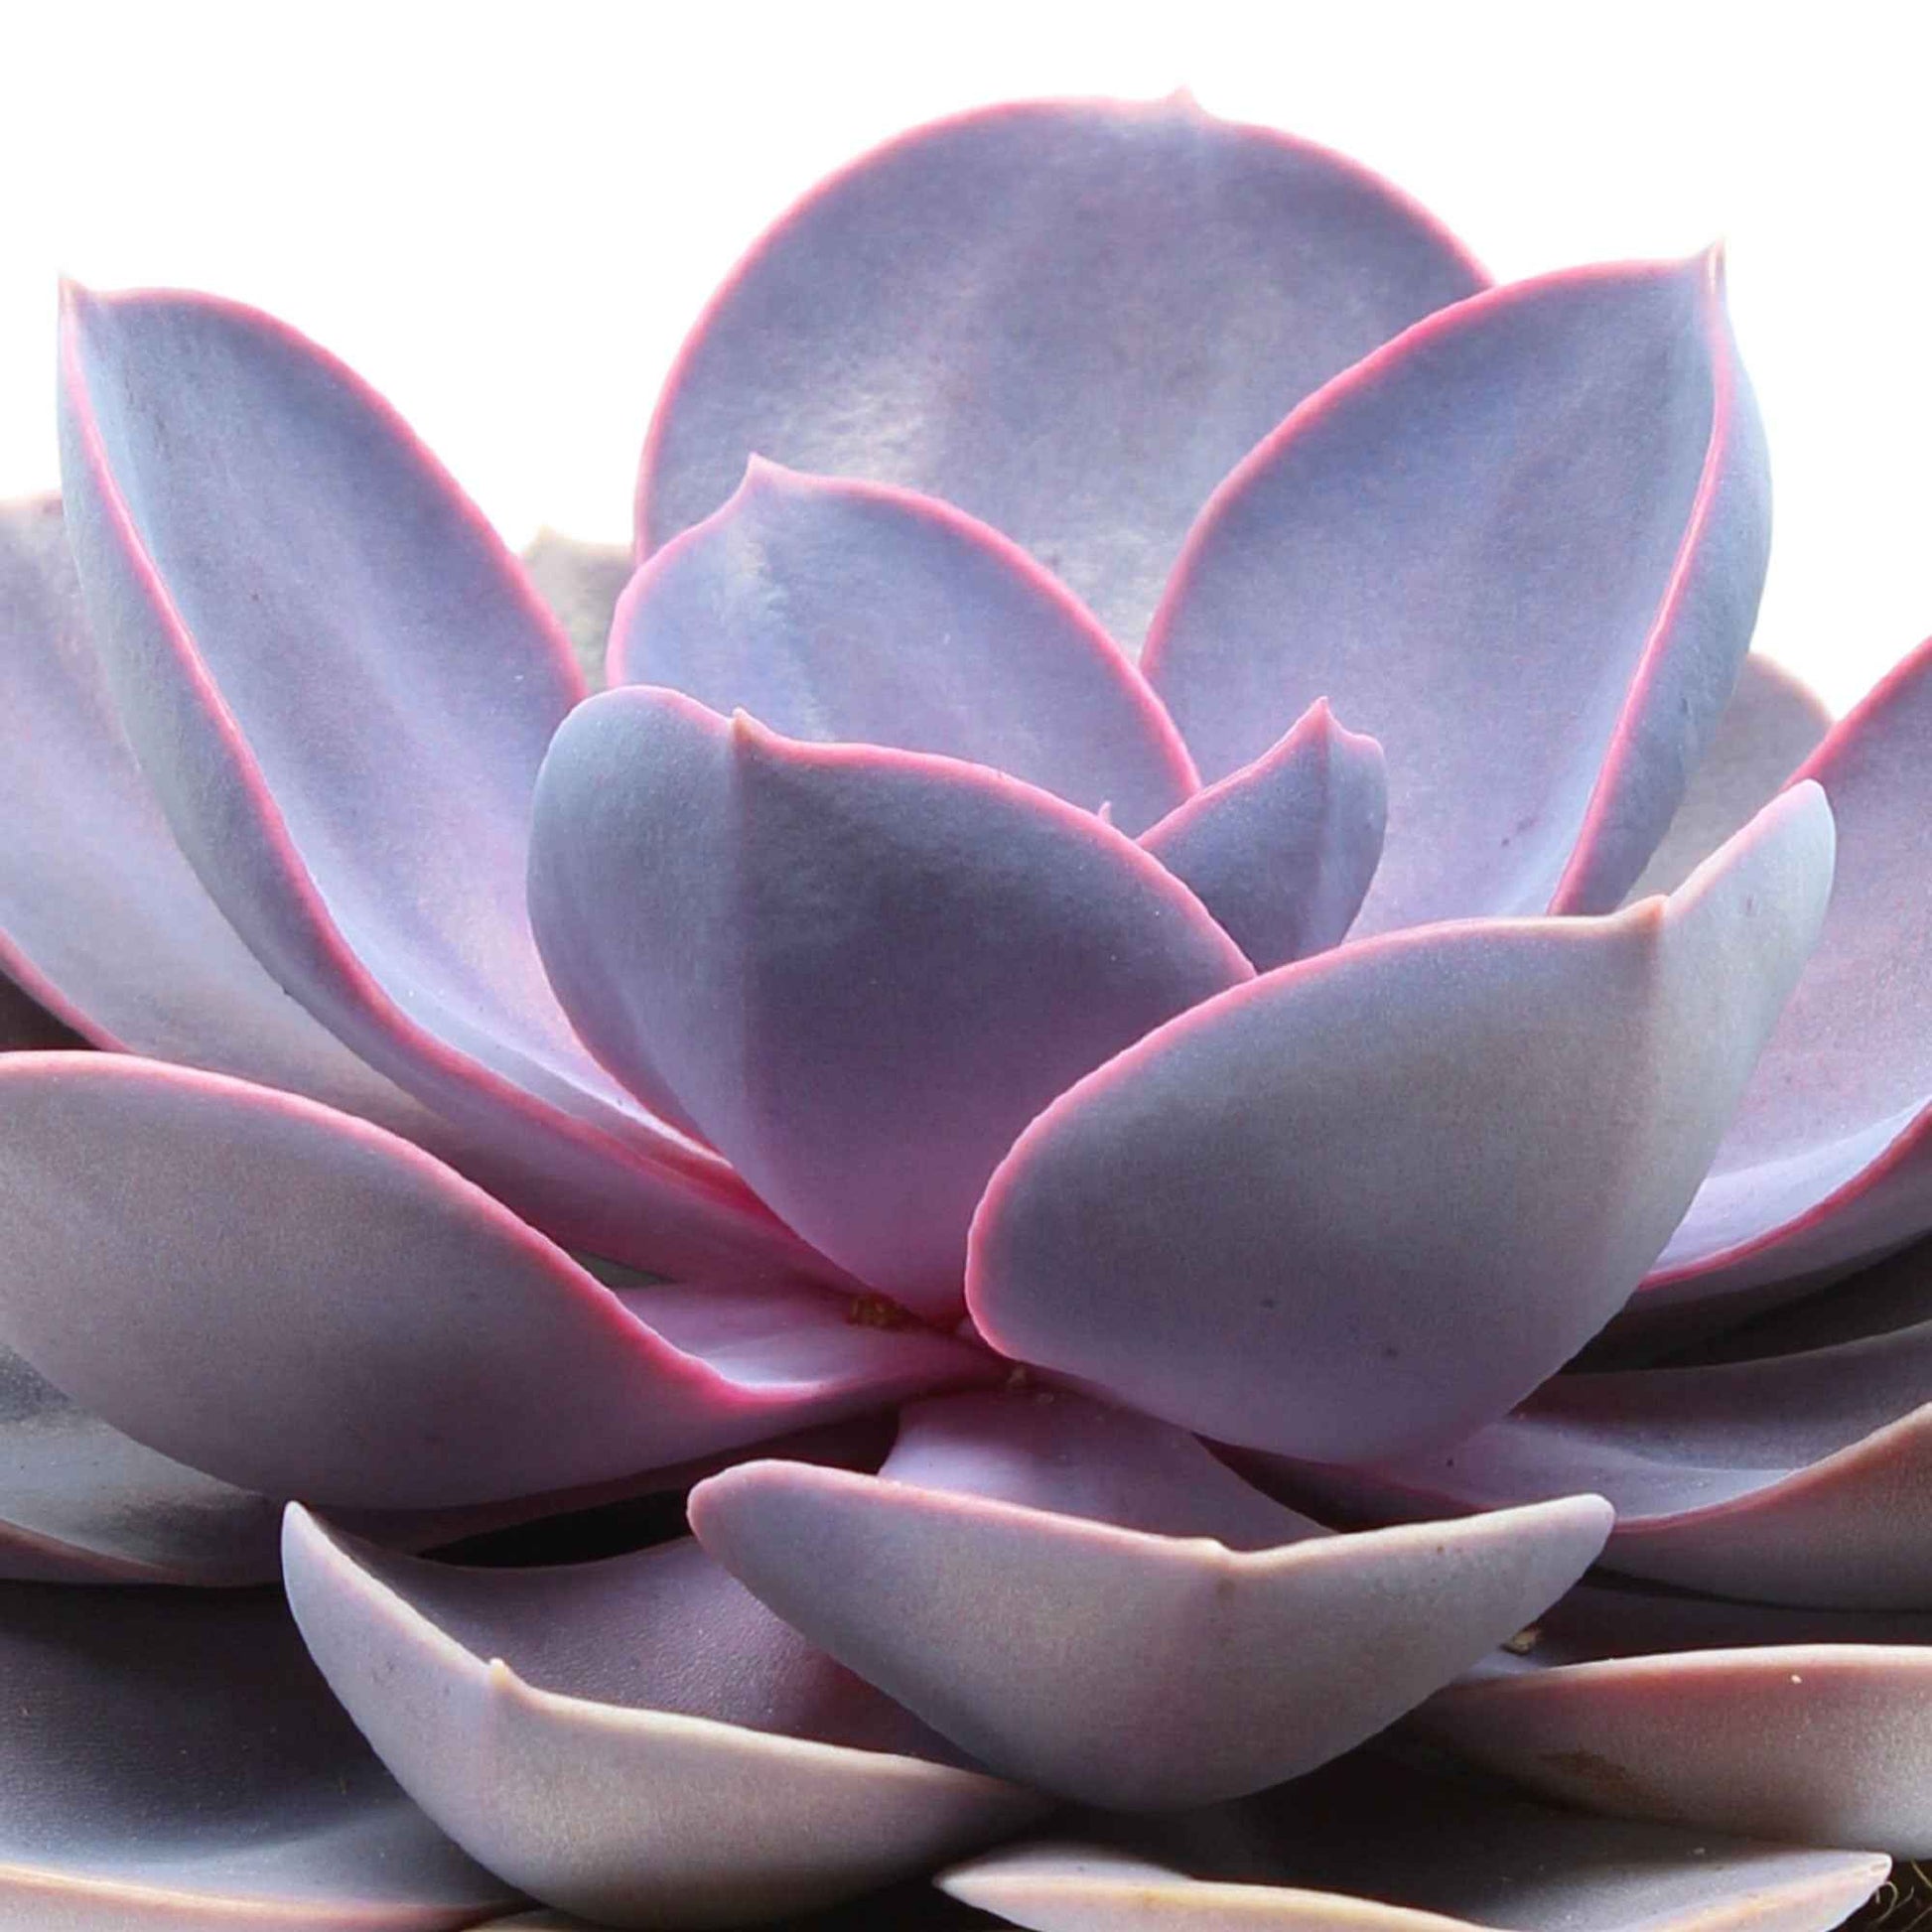 Echeveria 'Purple Pearl' lila - Echeveria gibbi.'purple pearl' - Nach Trends